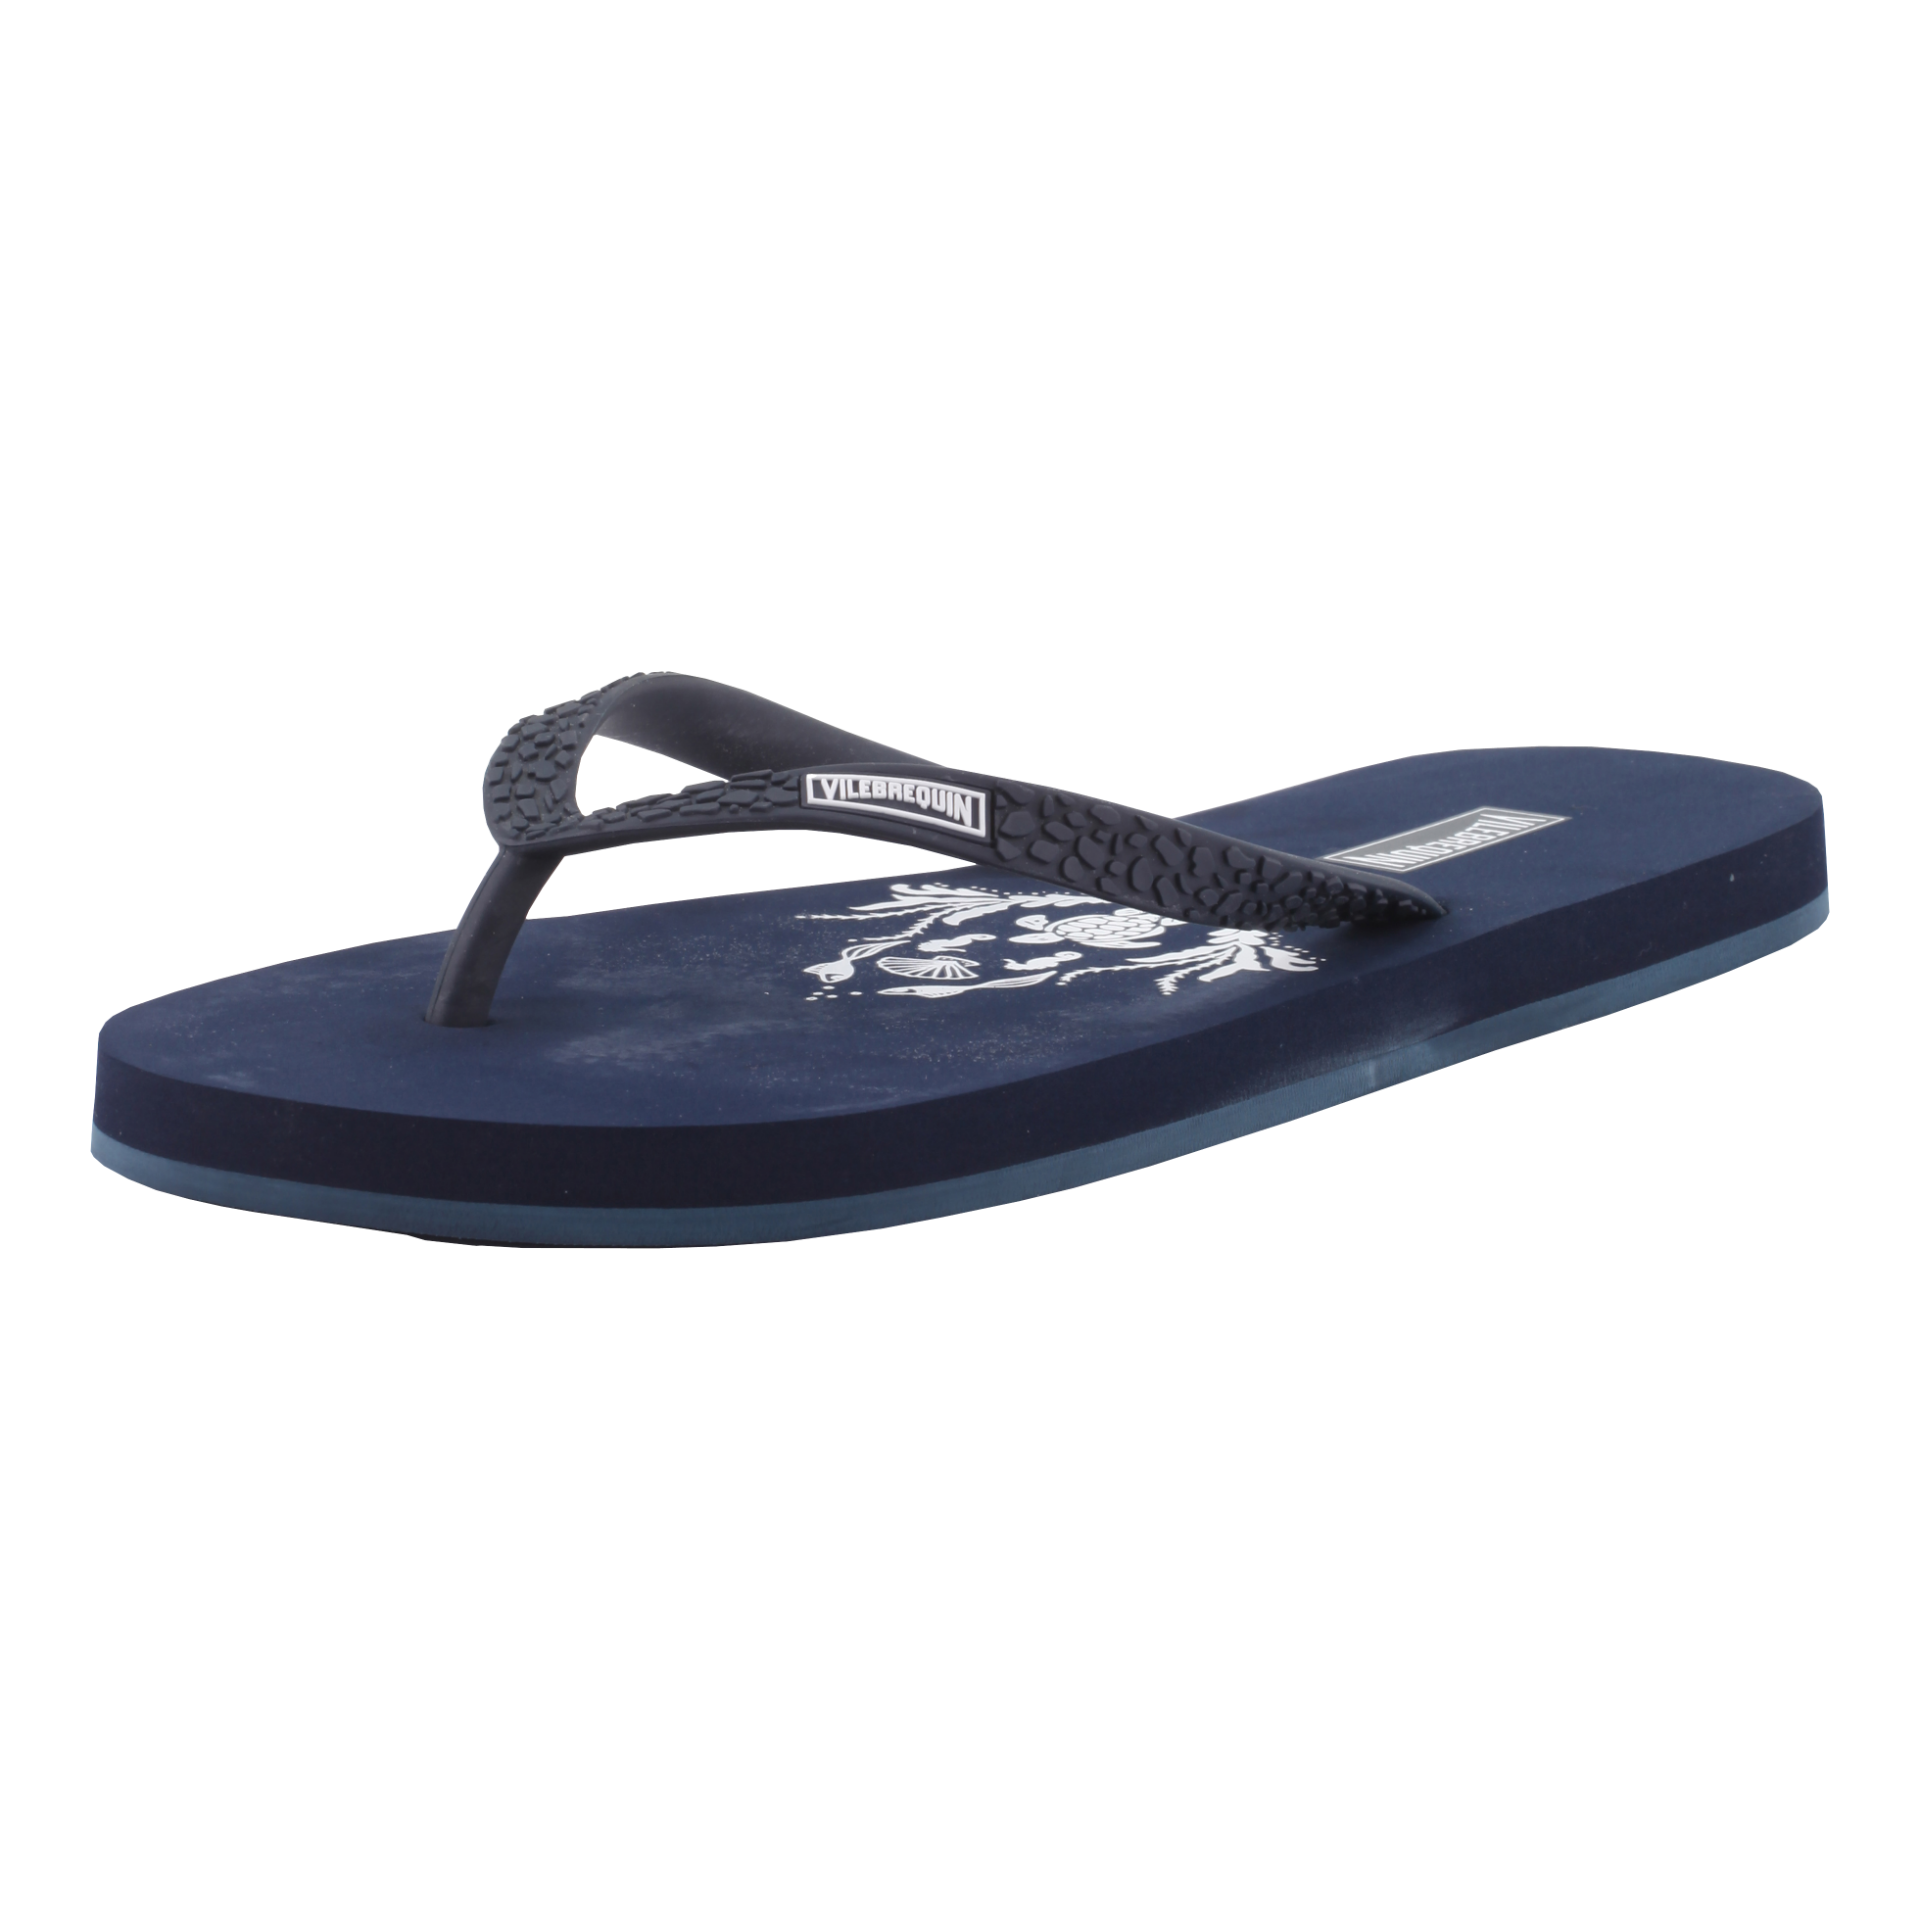 VILEBREQUIN Flip Flops Navy - Authentic & New - Size 3.5 / 4 - RRP Â£65+ ! - Image 3 of 5